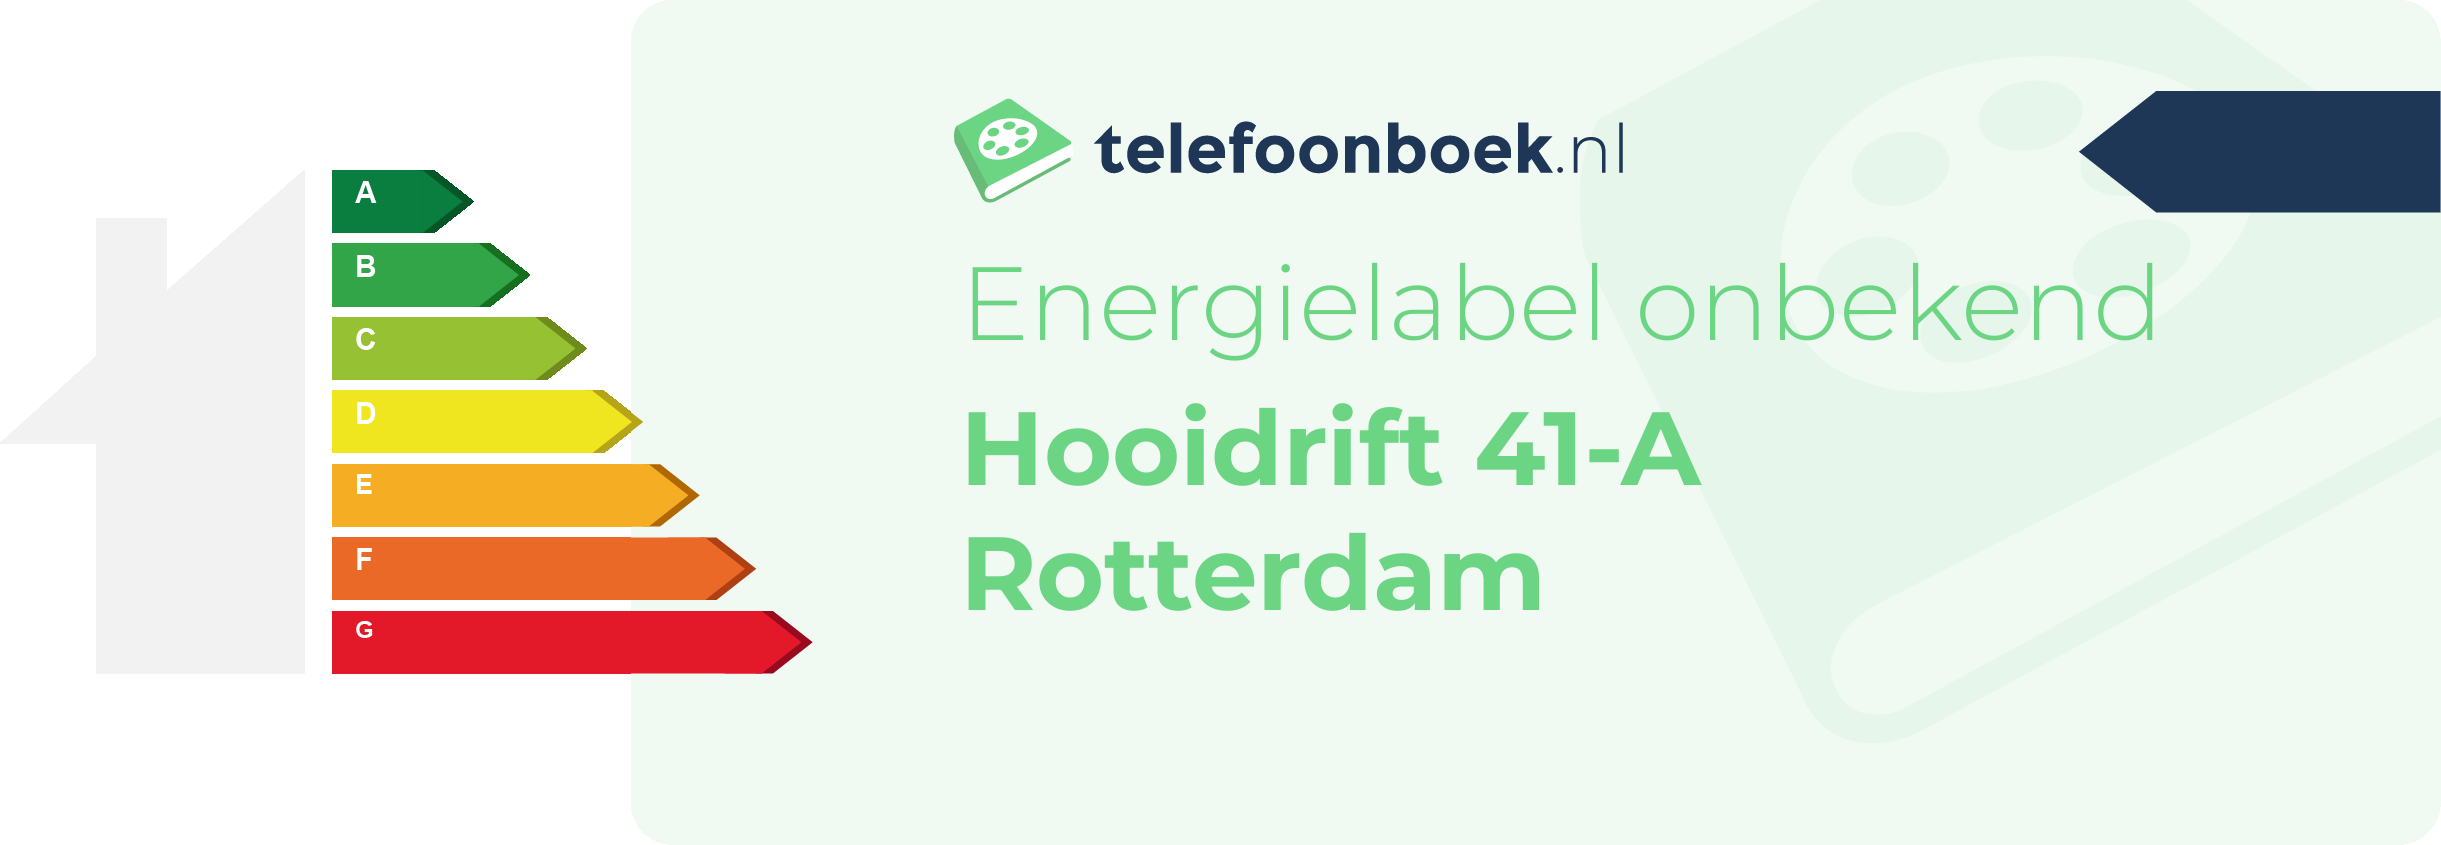 Energielabel Hooidrift 41-A Rotterdam